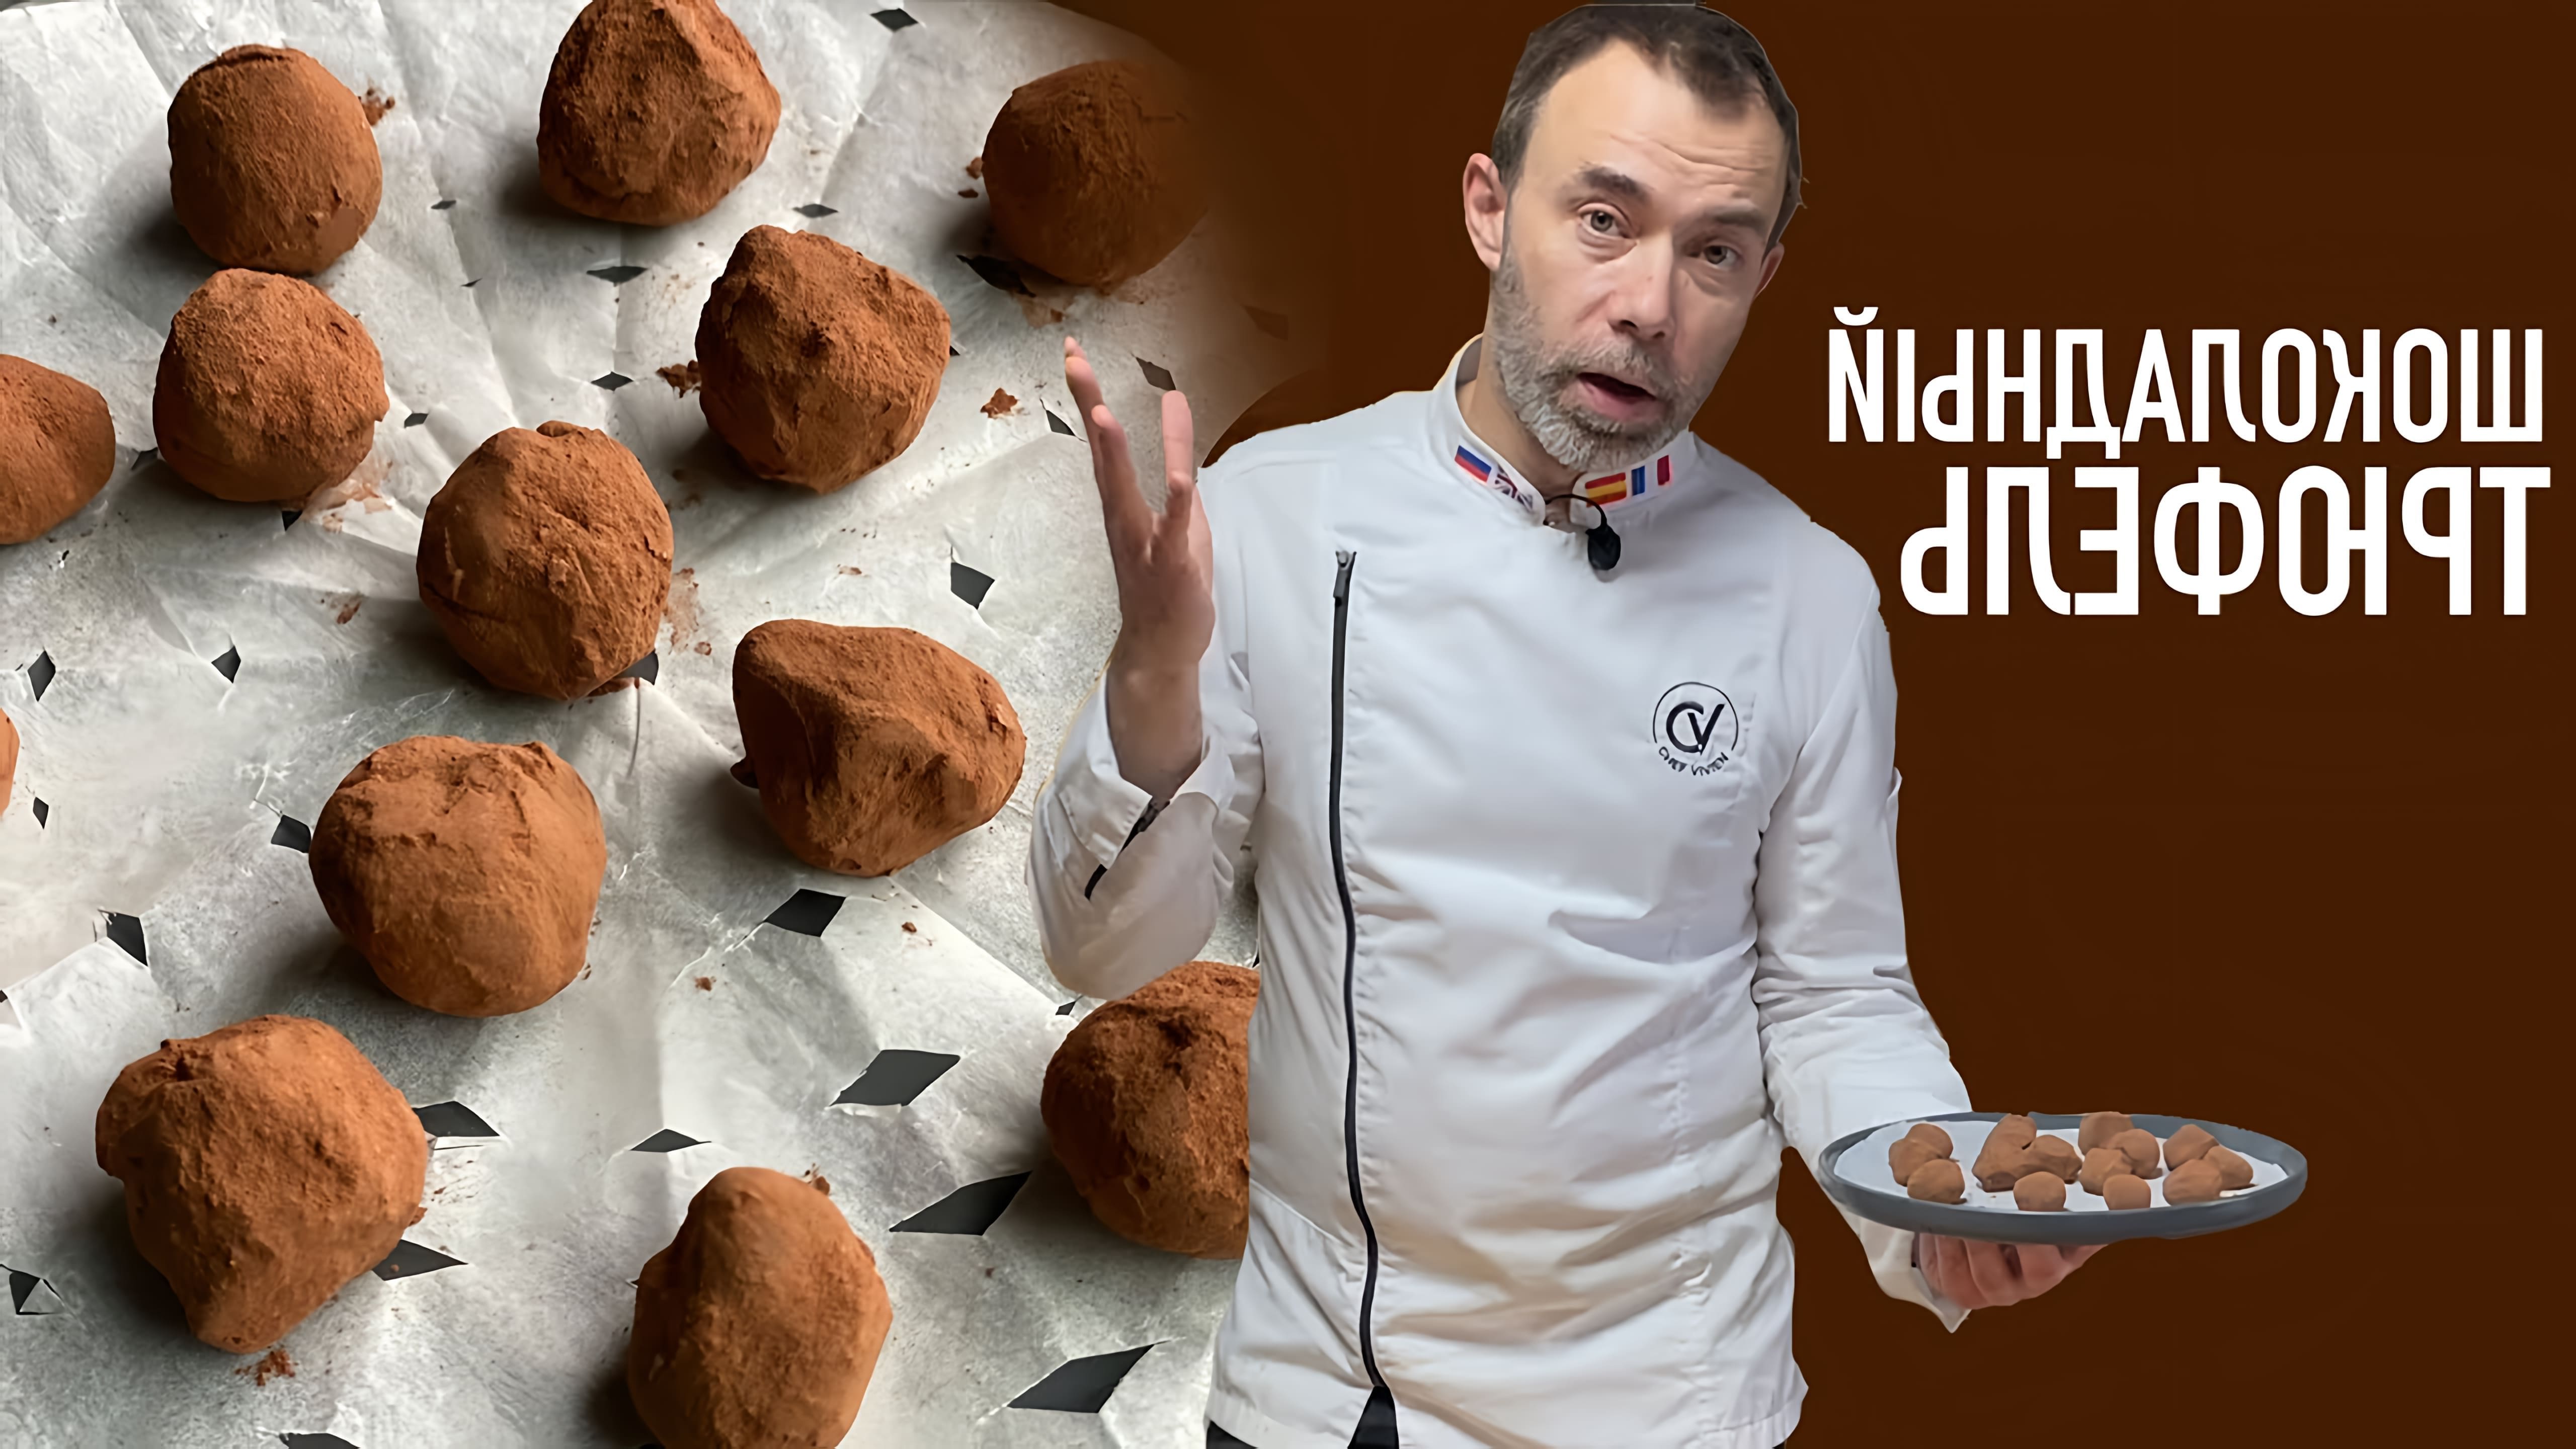 В этом видео рассказывается о французских конфетах Трюфель, которые являются традиционными шоколадными сладостями на Рождество